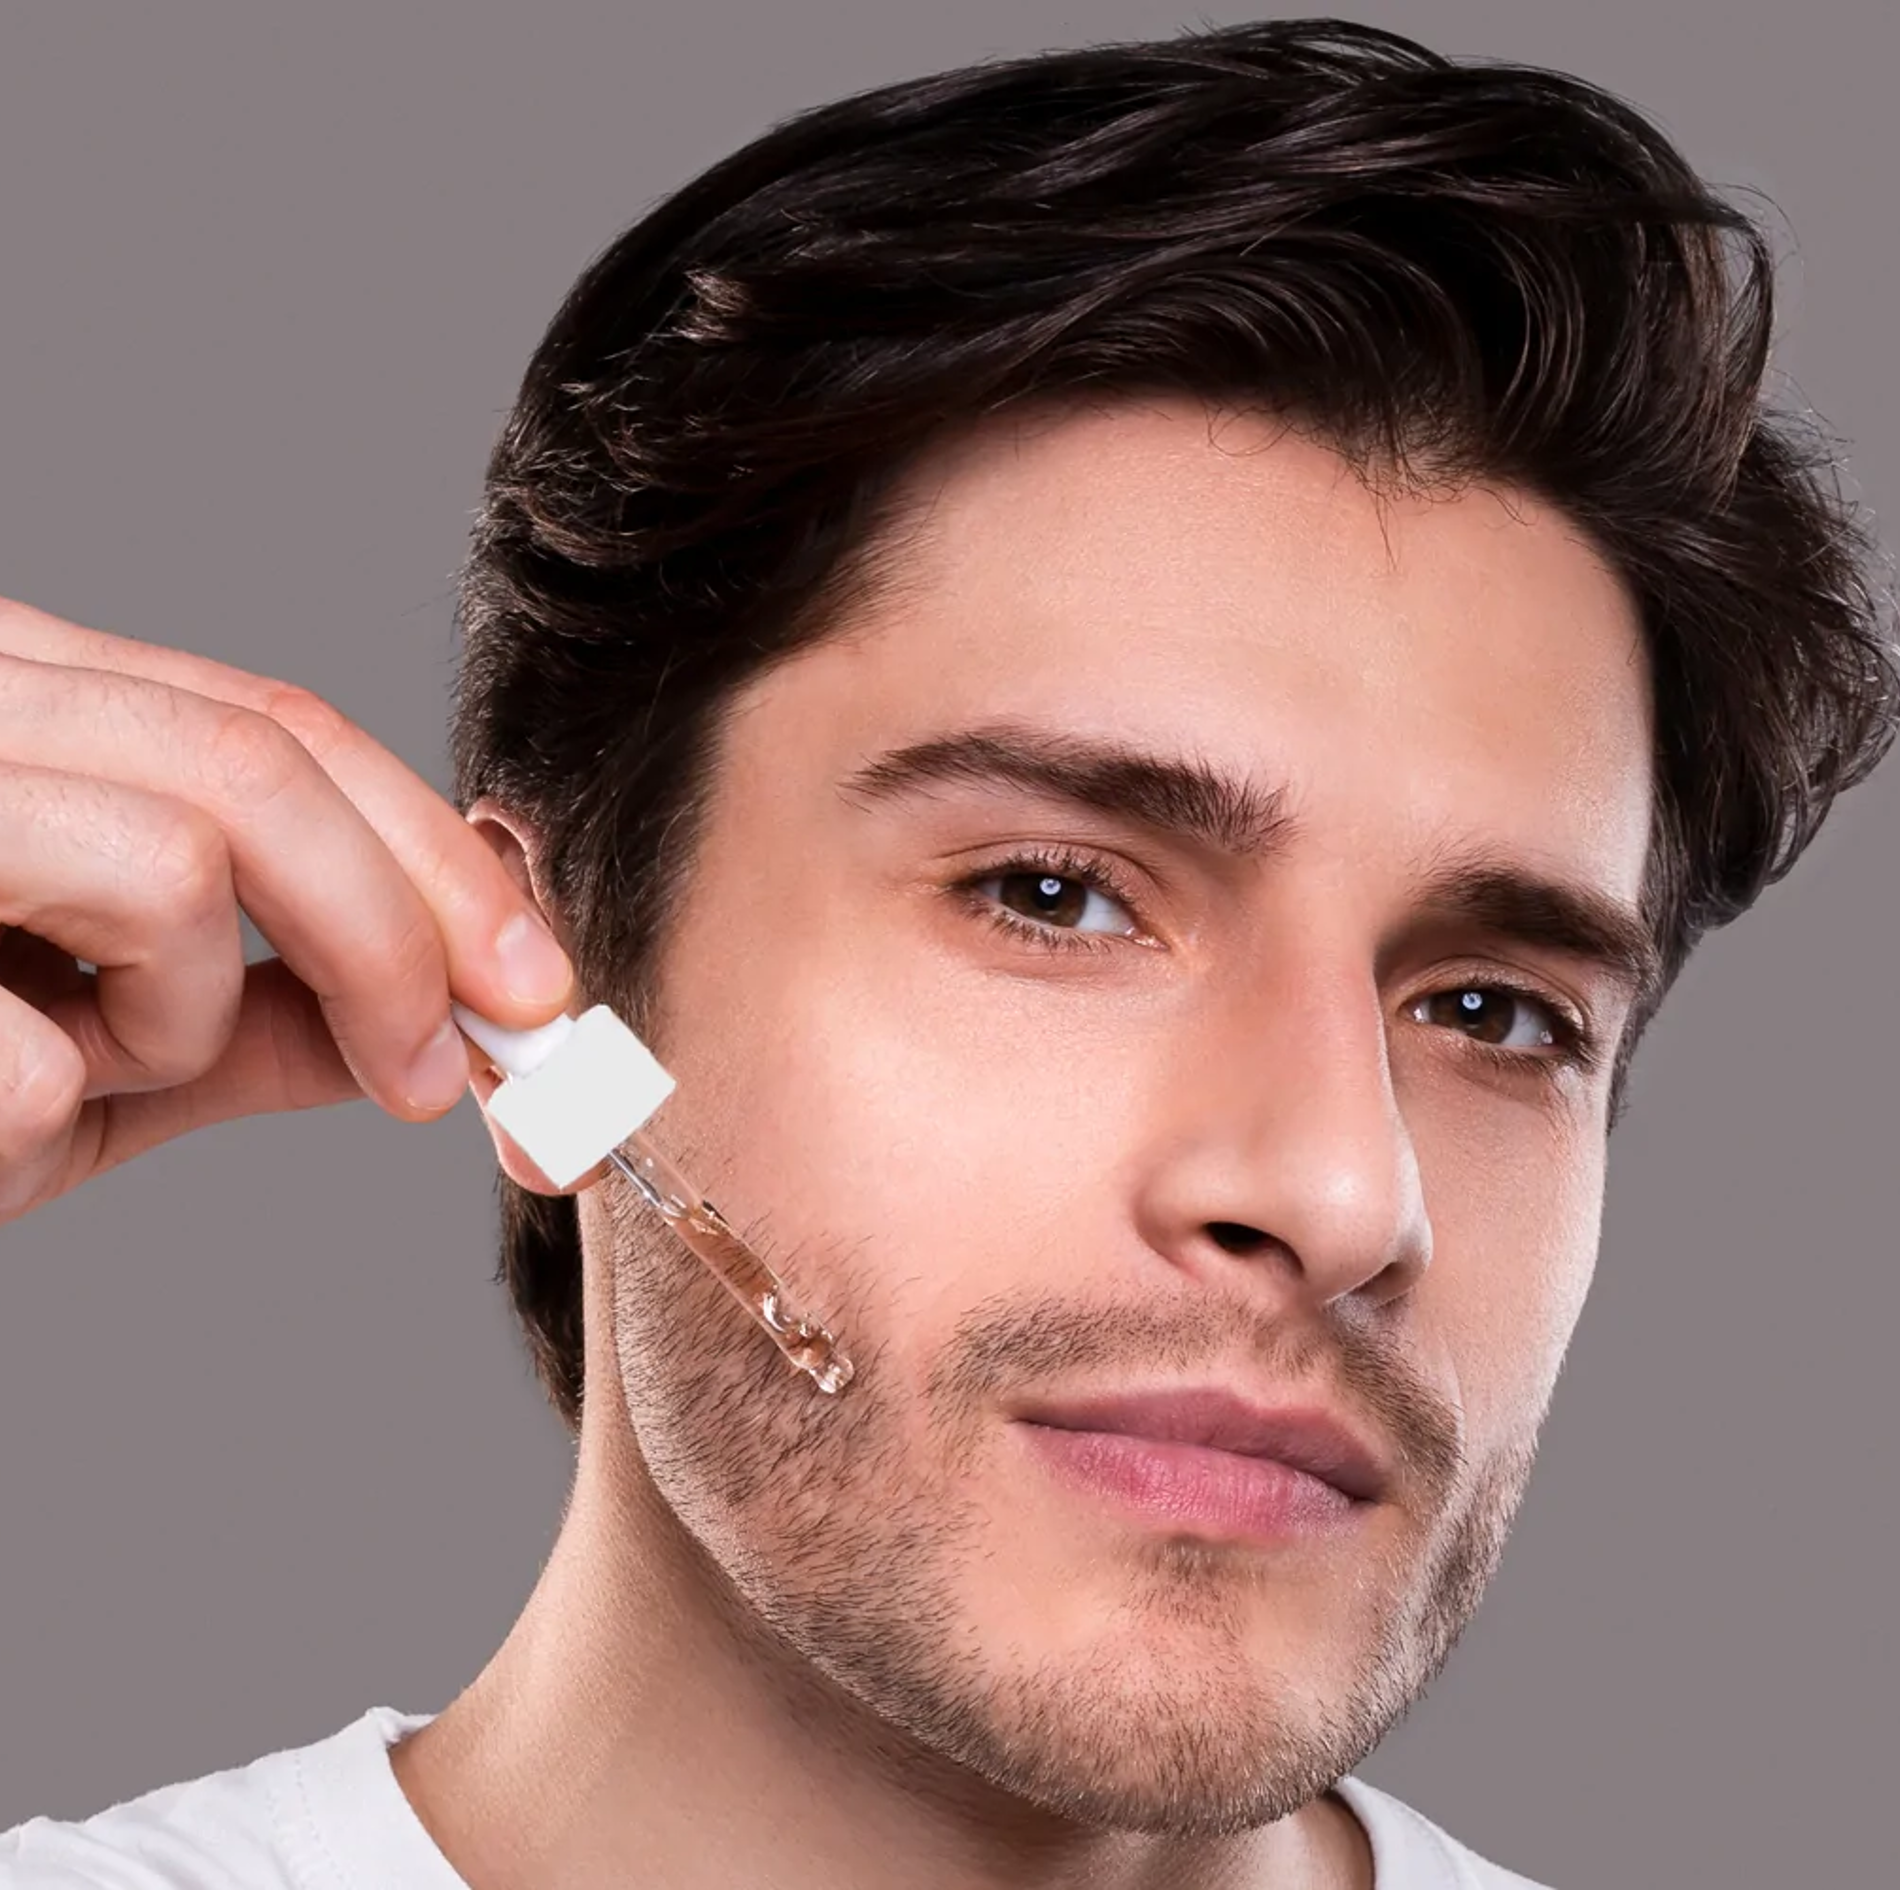 Le minoxidil pour la barbe : dangereux pour la santé ? – Max-Barber